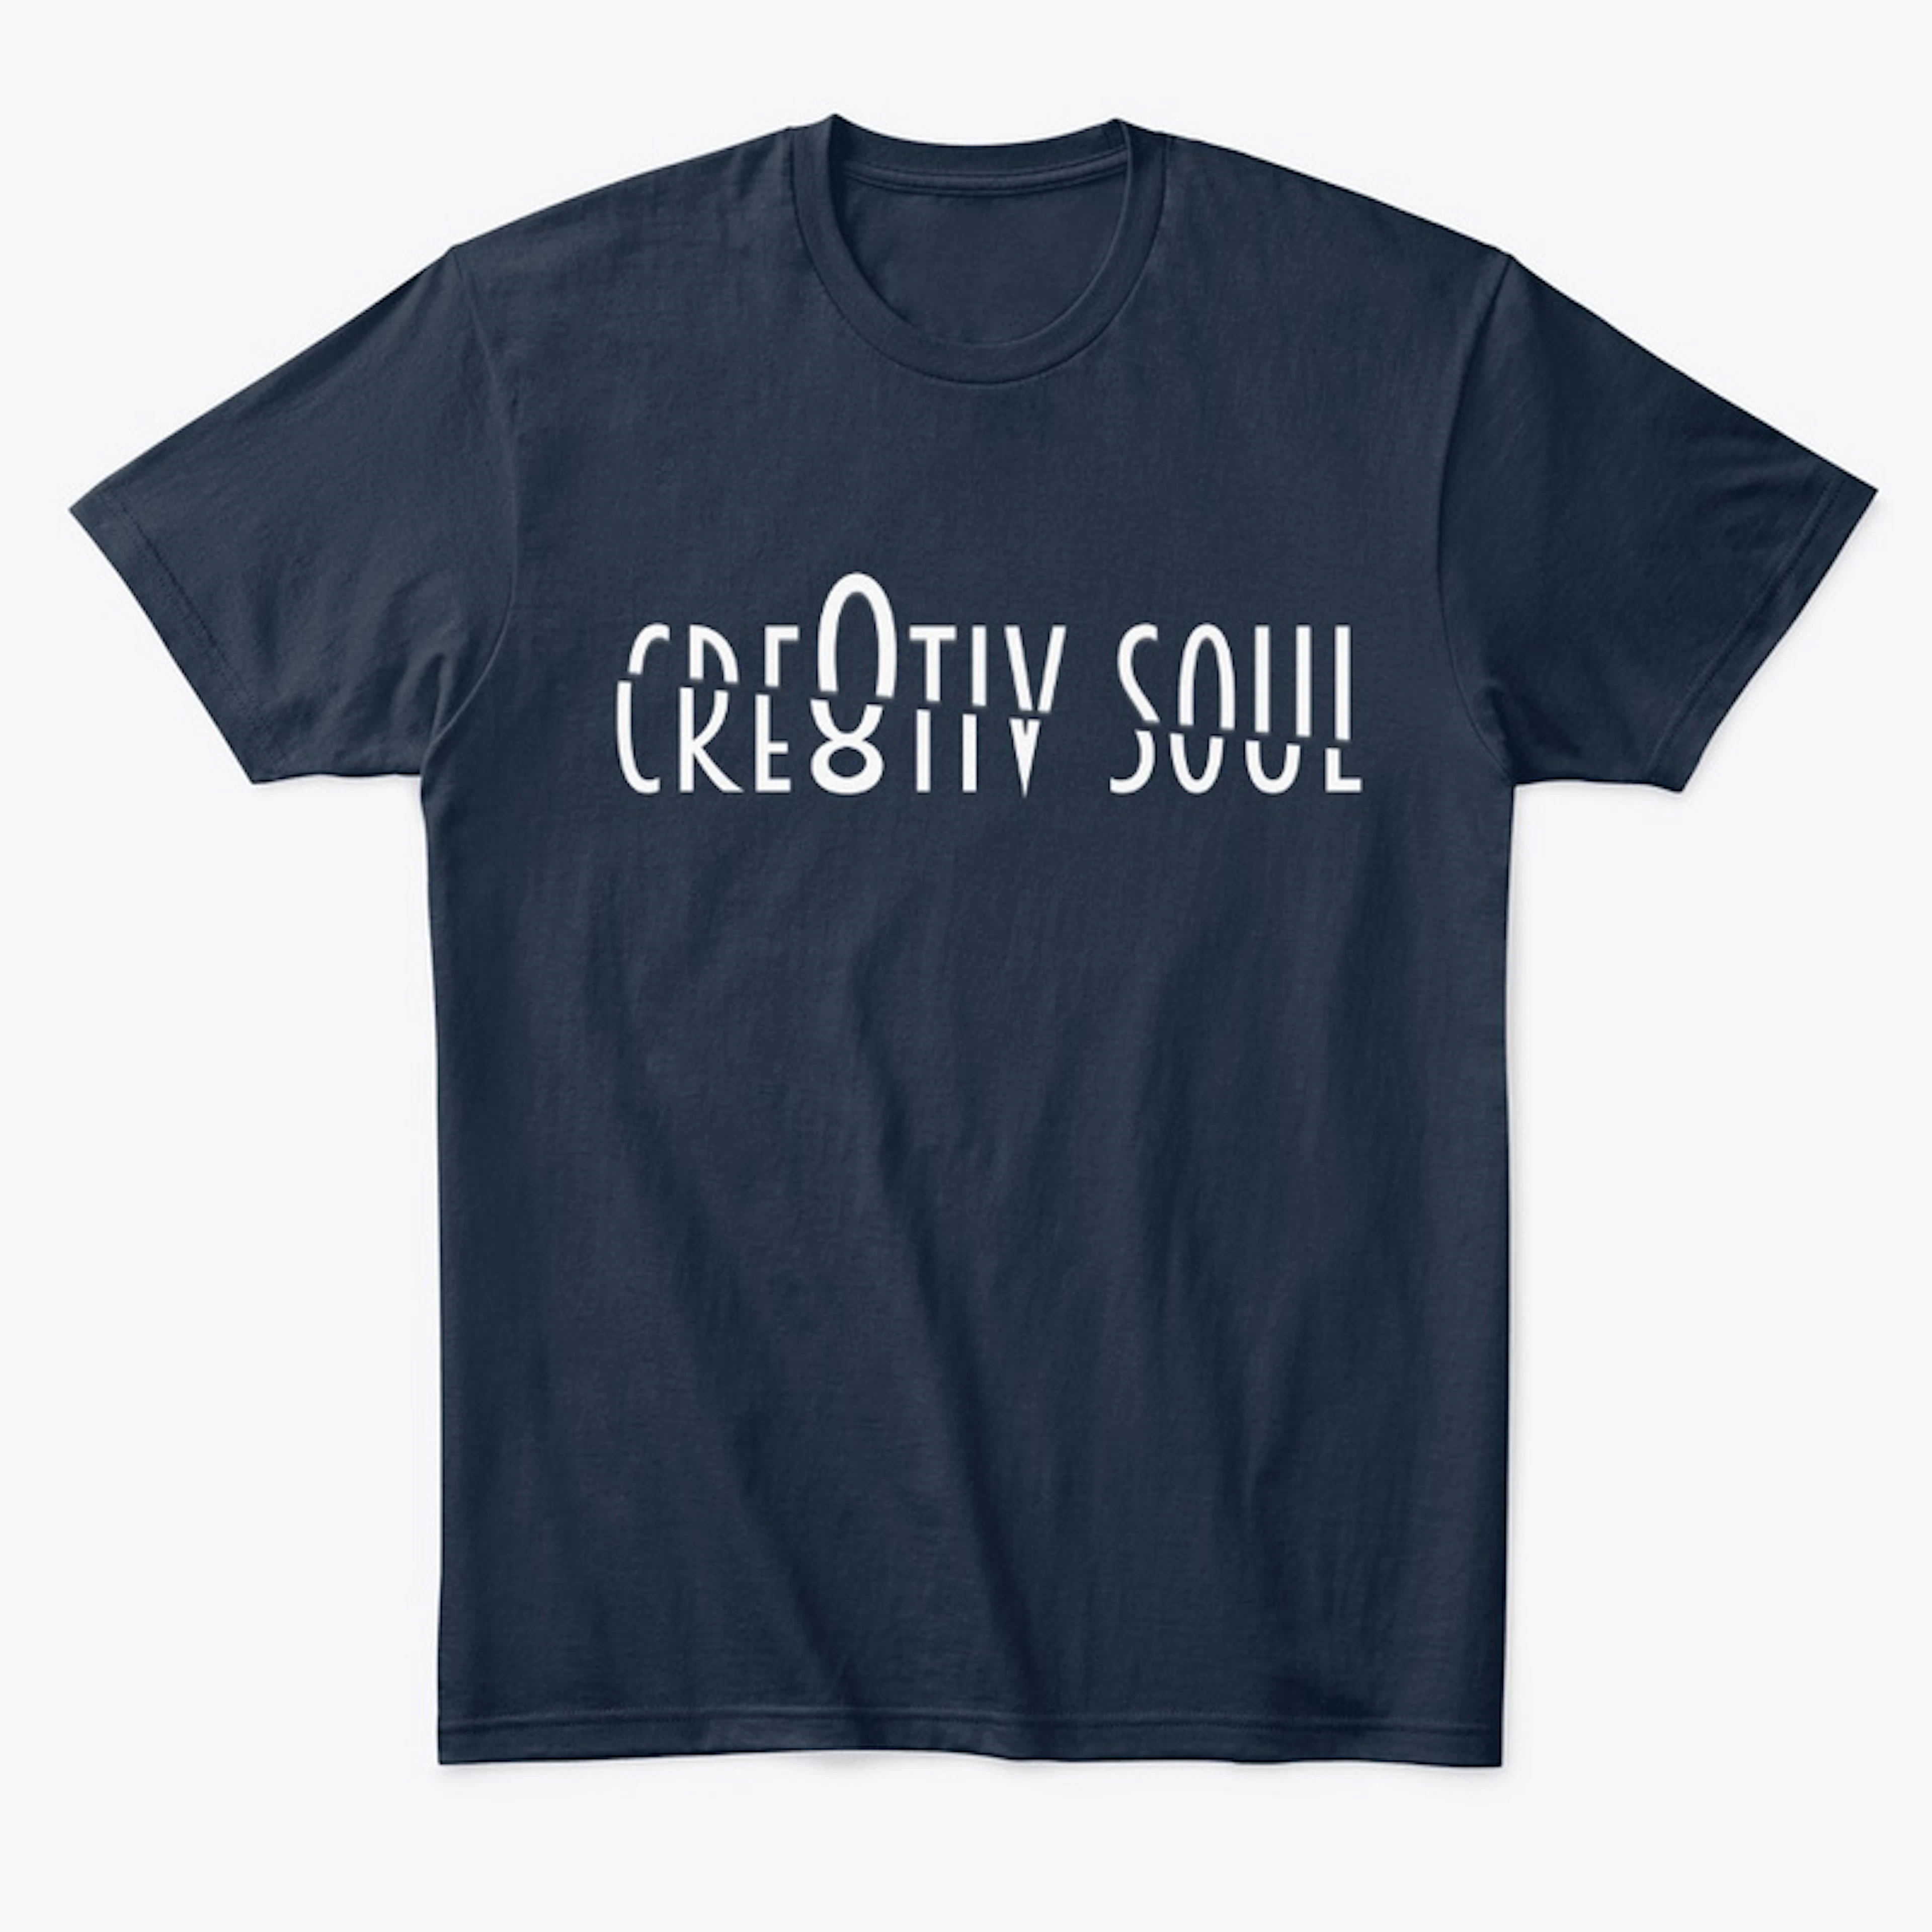 Cre8tiv Soul (White Font)